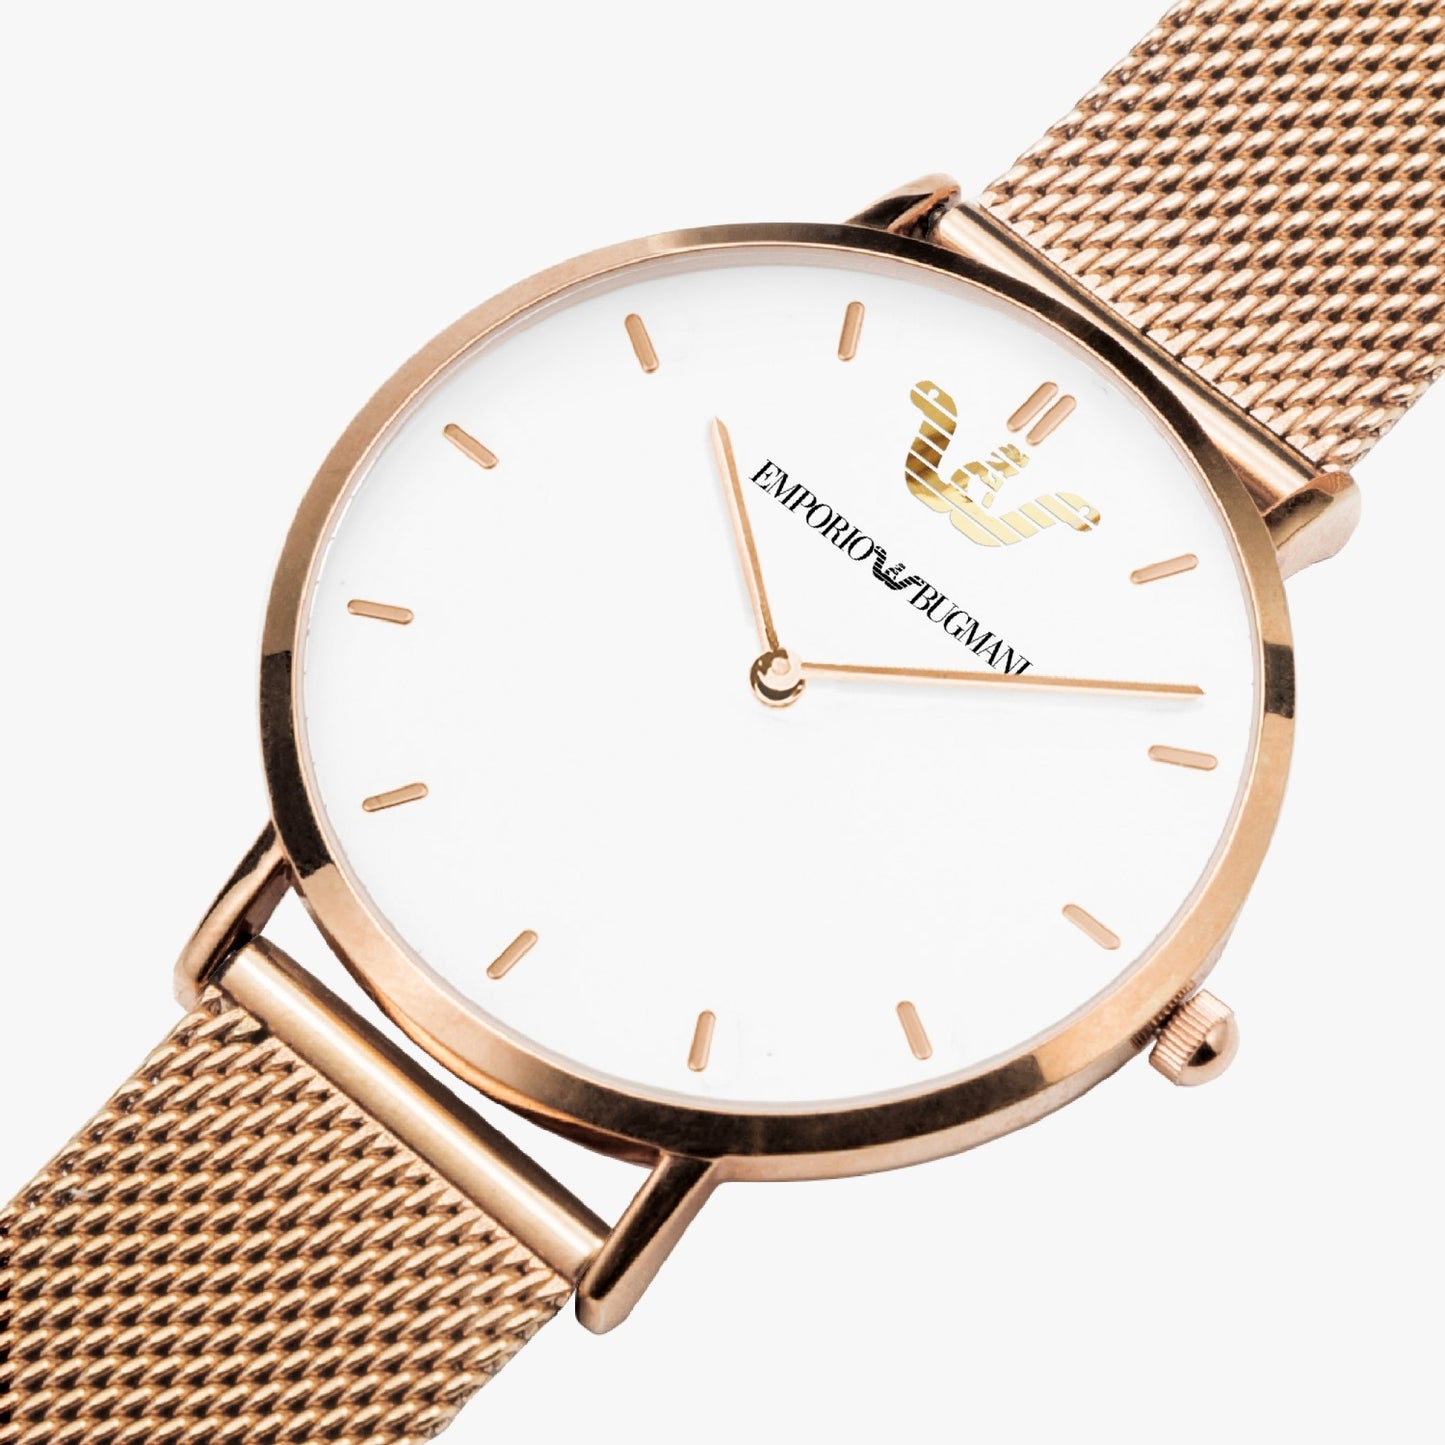 Bugmani Luxury Watch